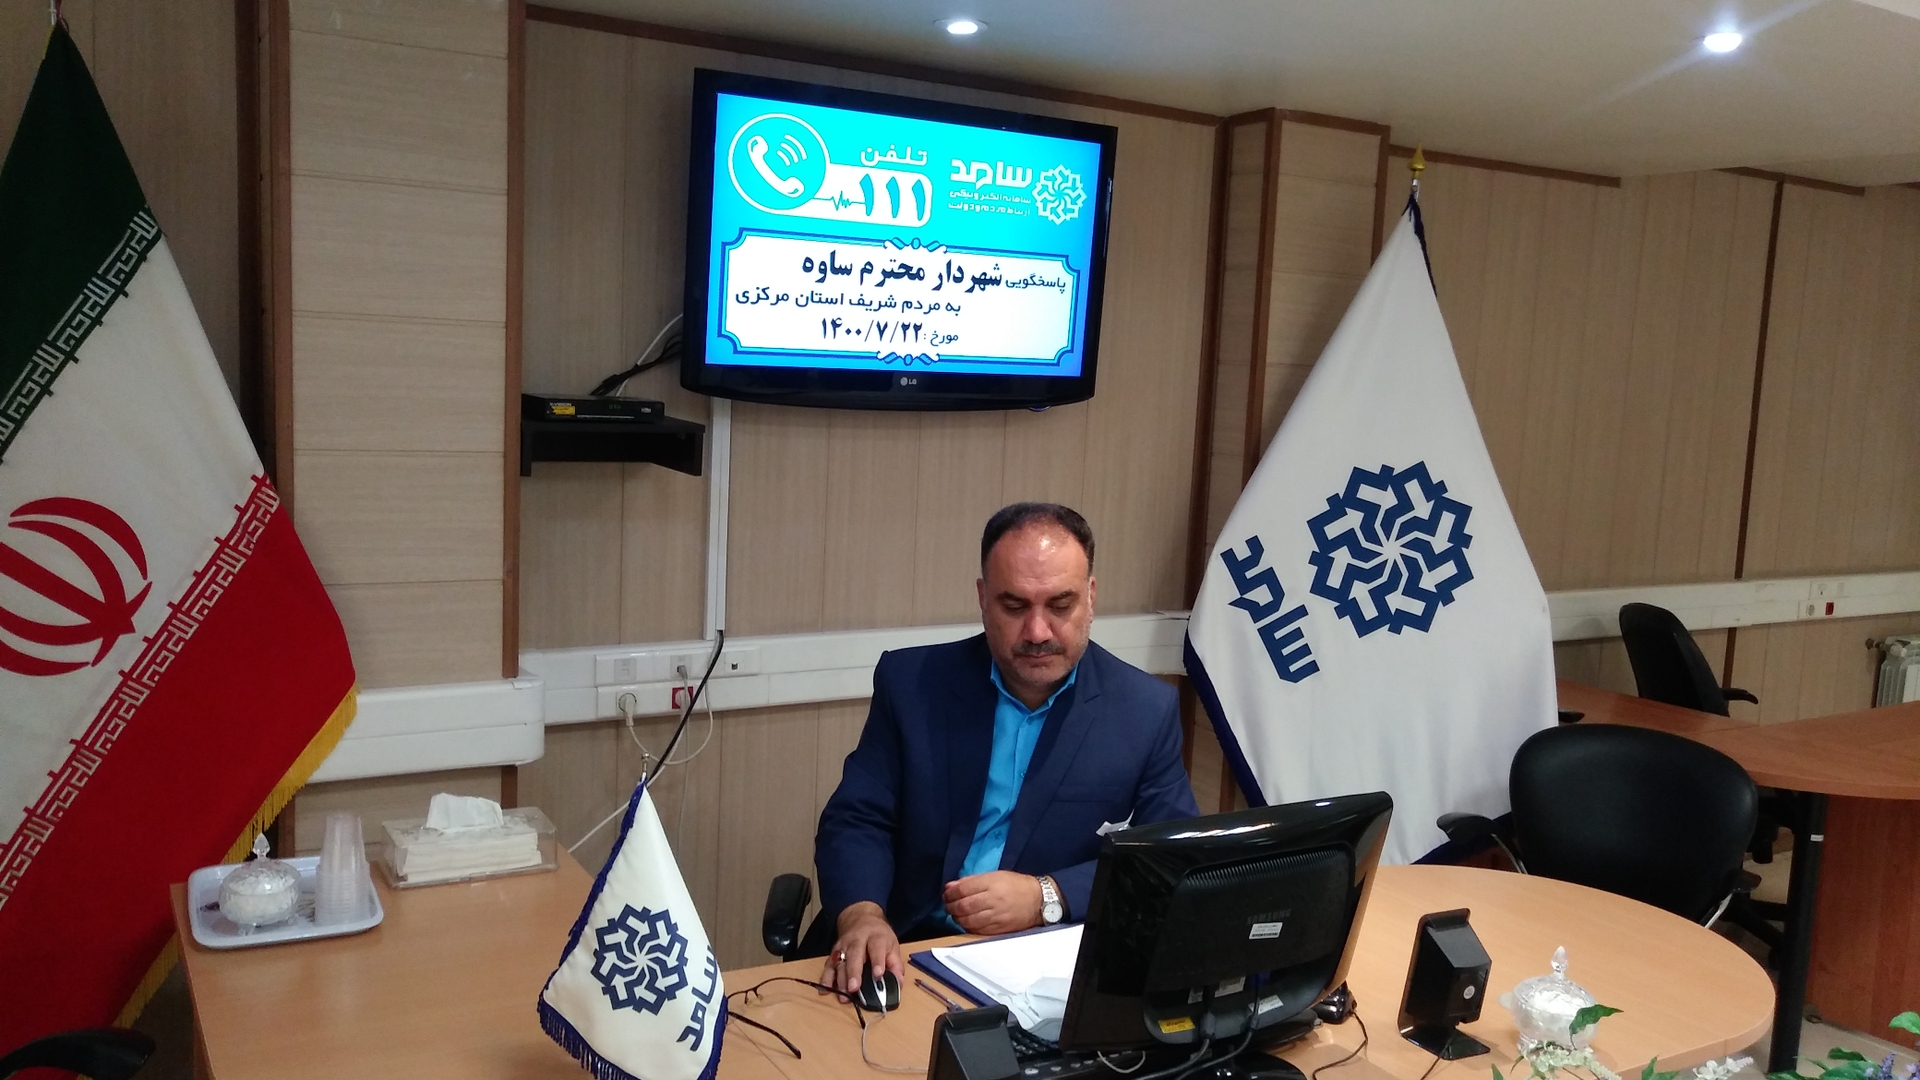 پاسخگویی شهردار محترم ساوه در سامد